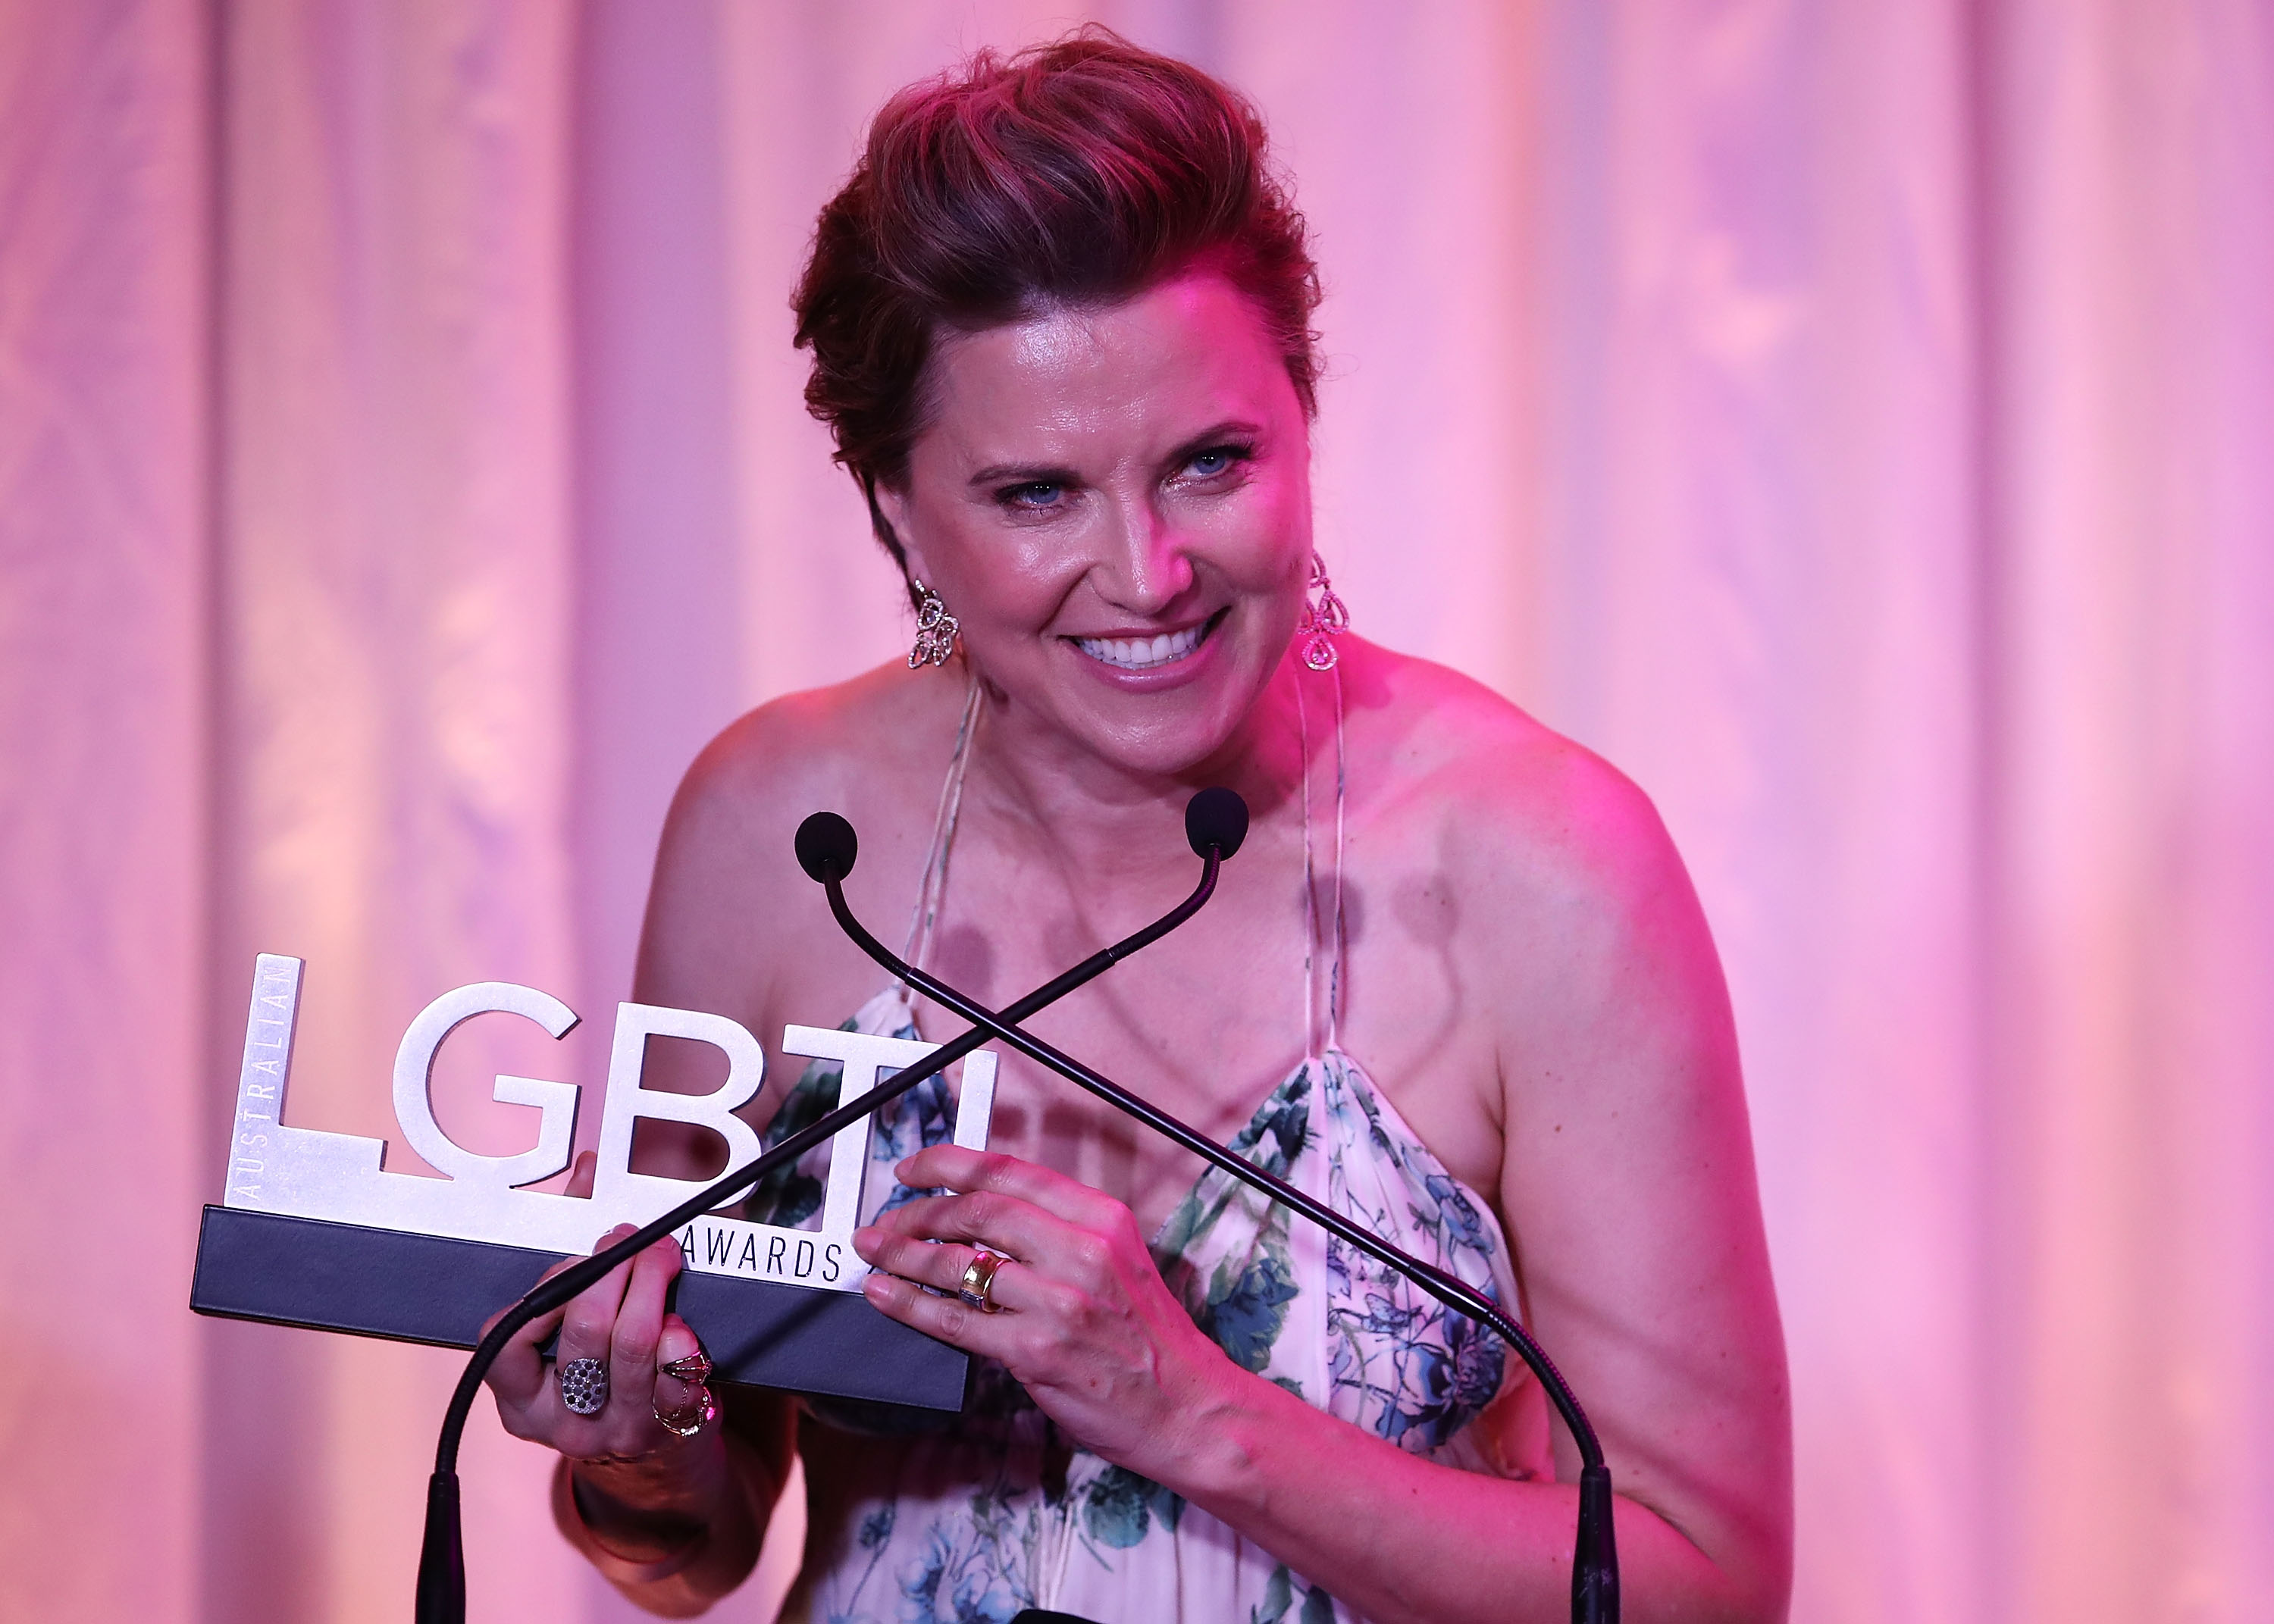 Lucy Lawless recevant le prix Star 100 Ally of the Year lors des Australian LGBTI Awards 2017 à l'Opéra de Sydney, le 2 mars 2017, à Sydney, en Australie. | Source : Getty Images